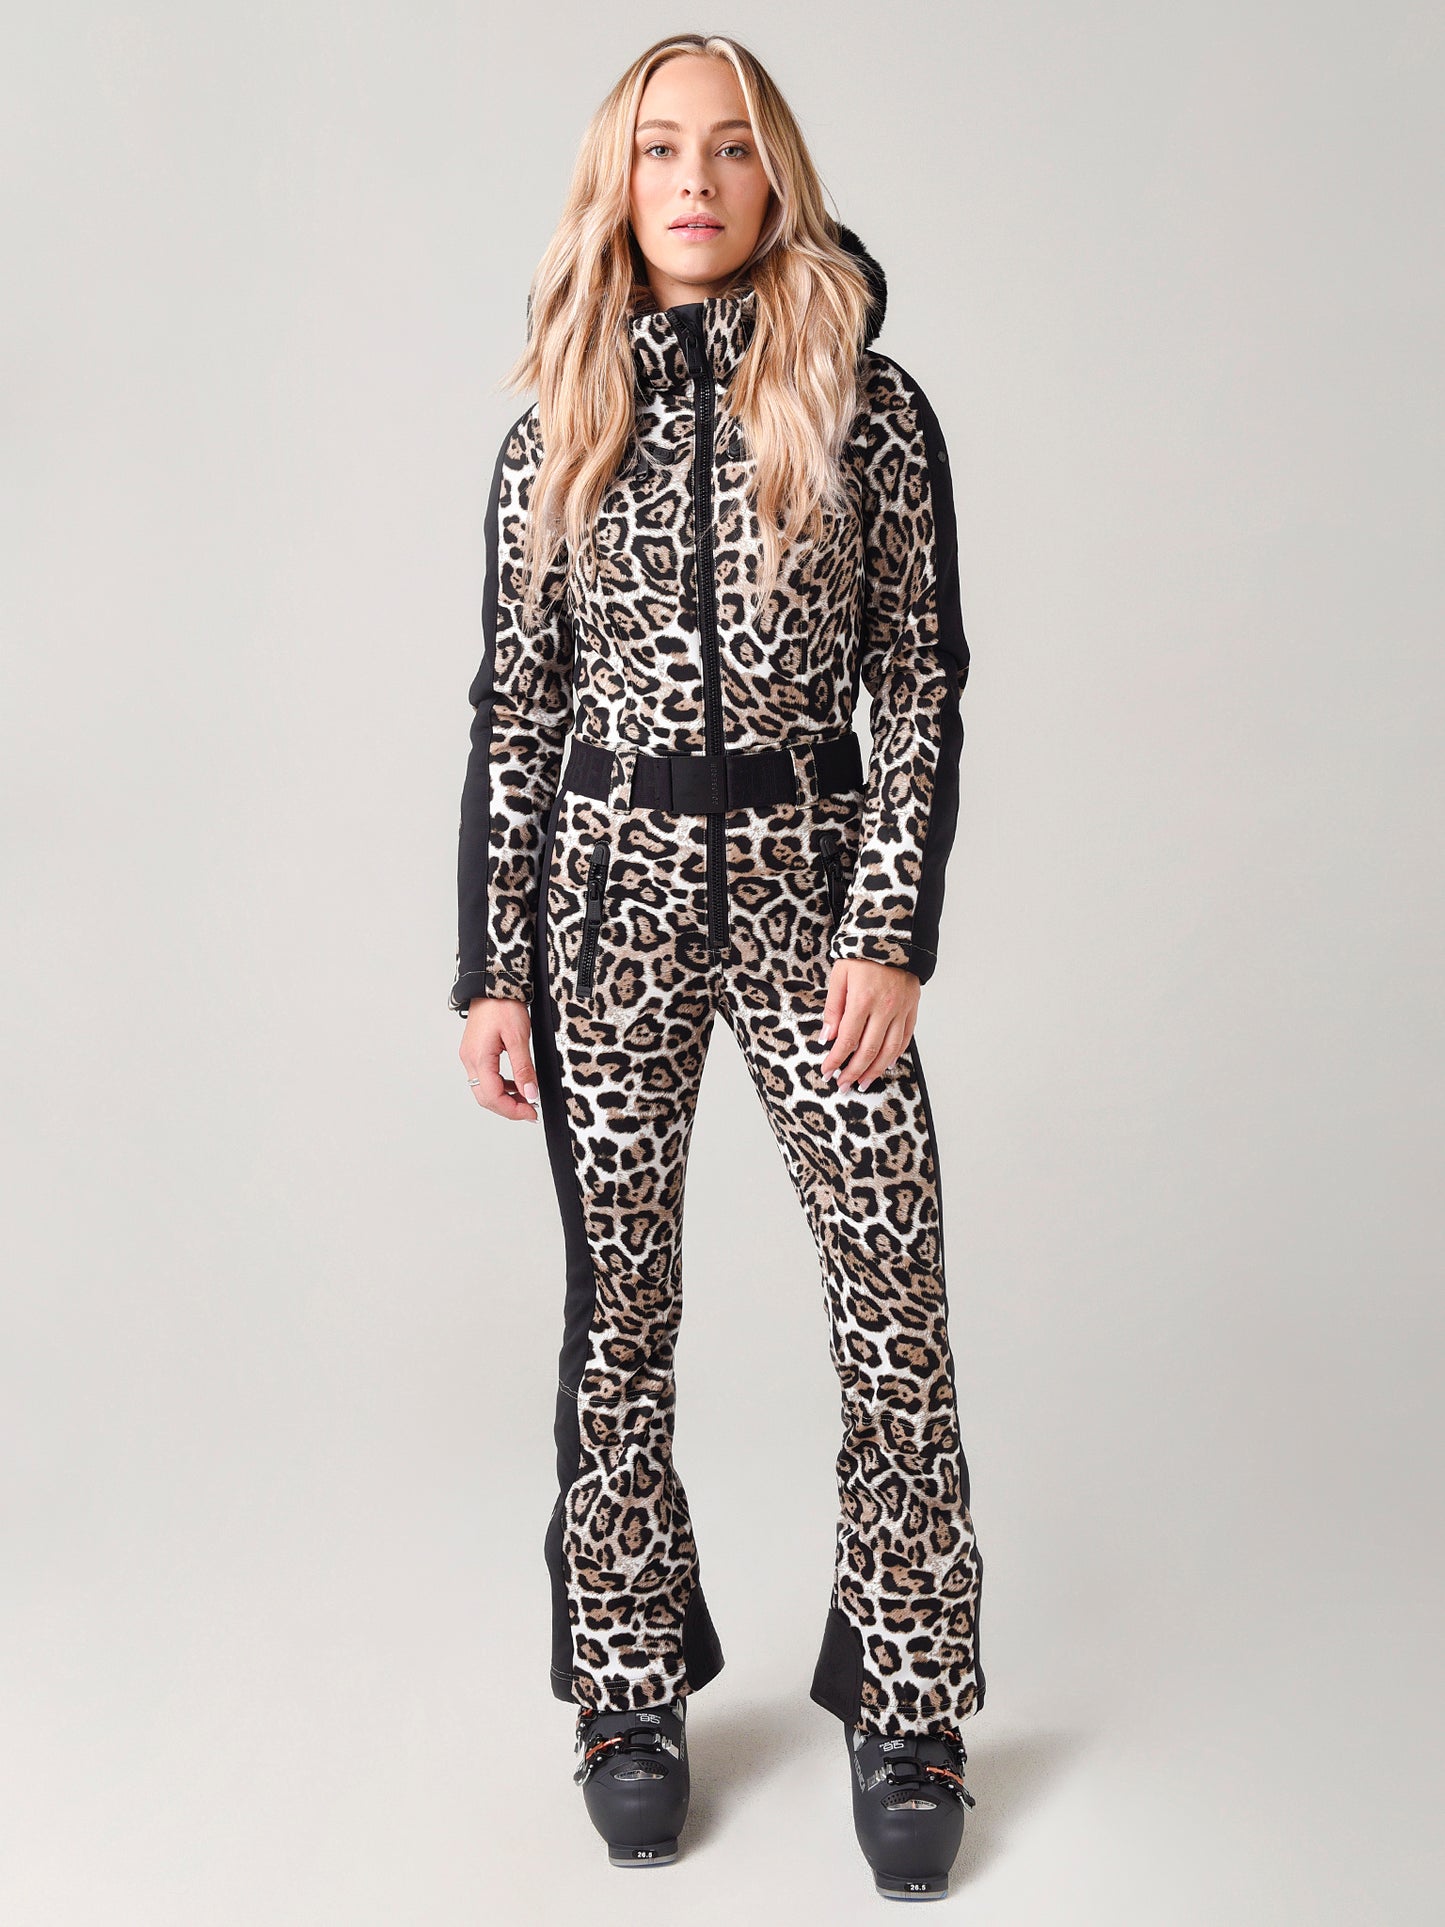 Goldbergh Women's Cougar Jumpsuit Faux-Fur Leopard Ski Suit